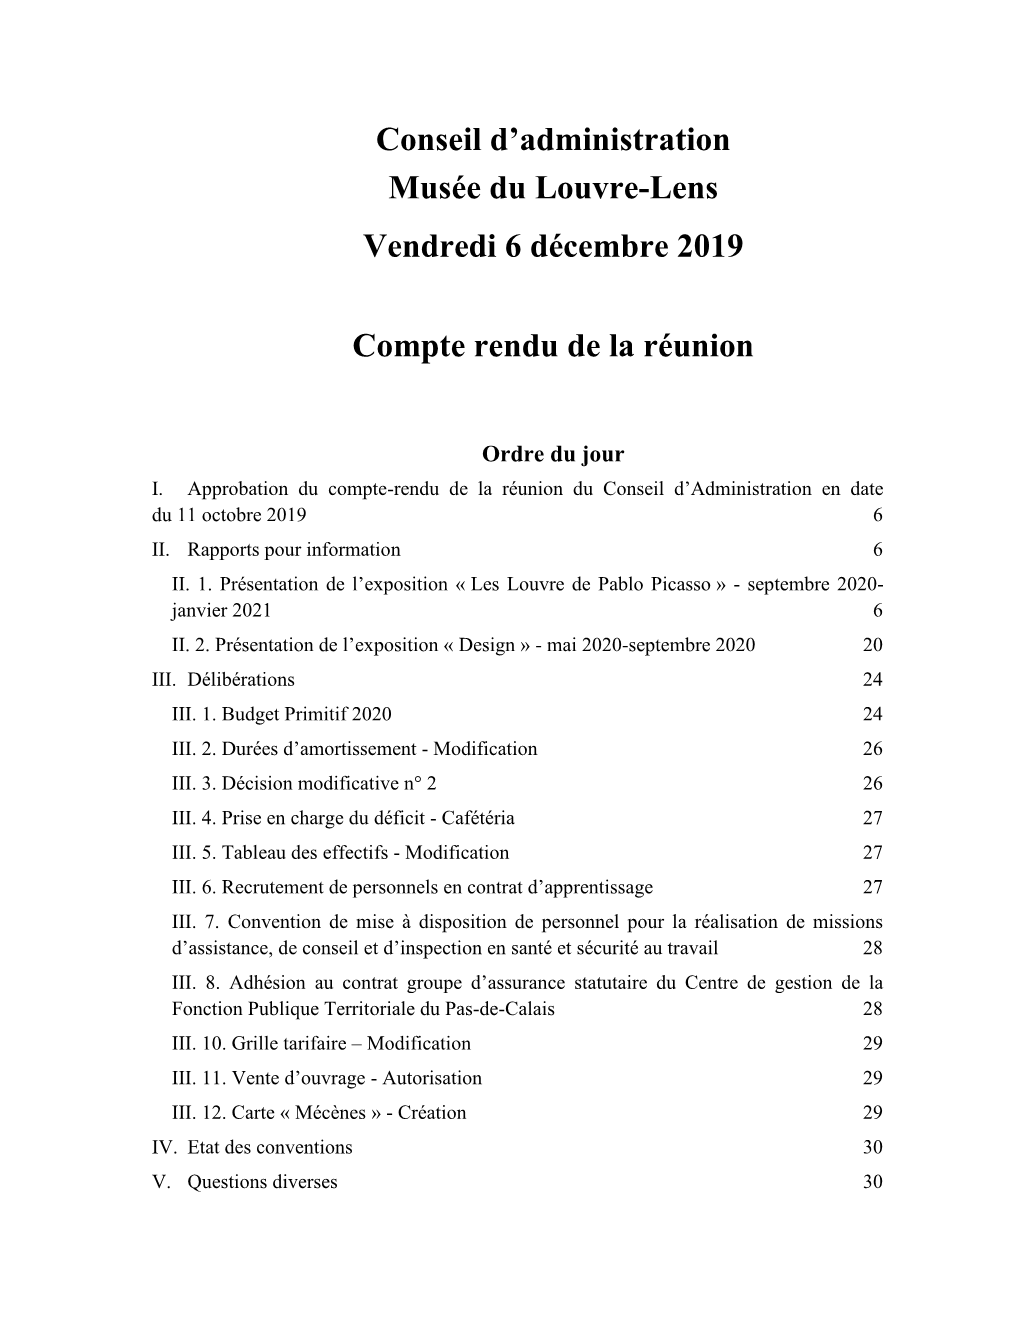 Conseil D'administration Musée Du Louvre-Lens Vendredi 6 Décembre 2019 Compte Rendu De La Réunion